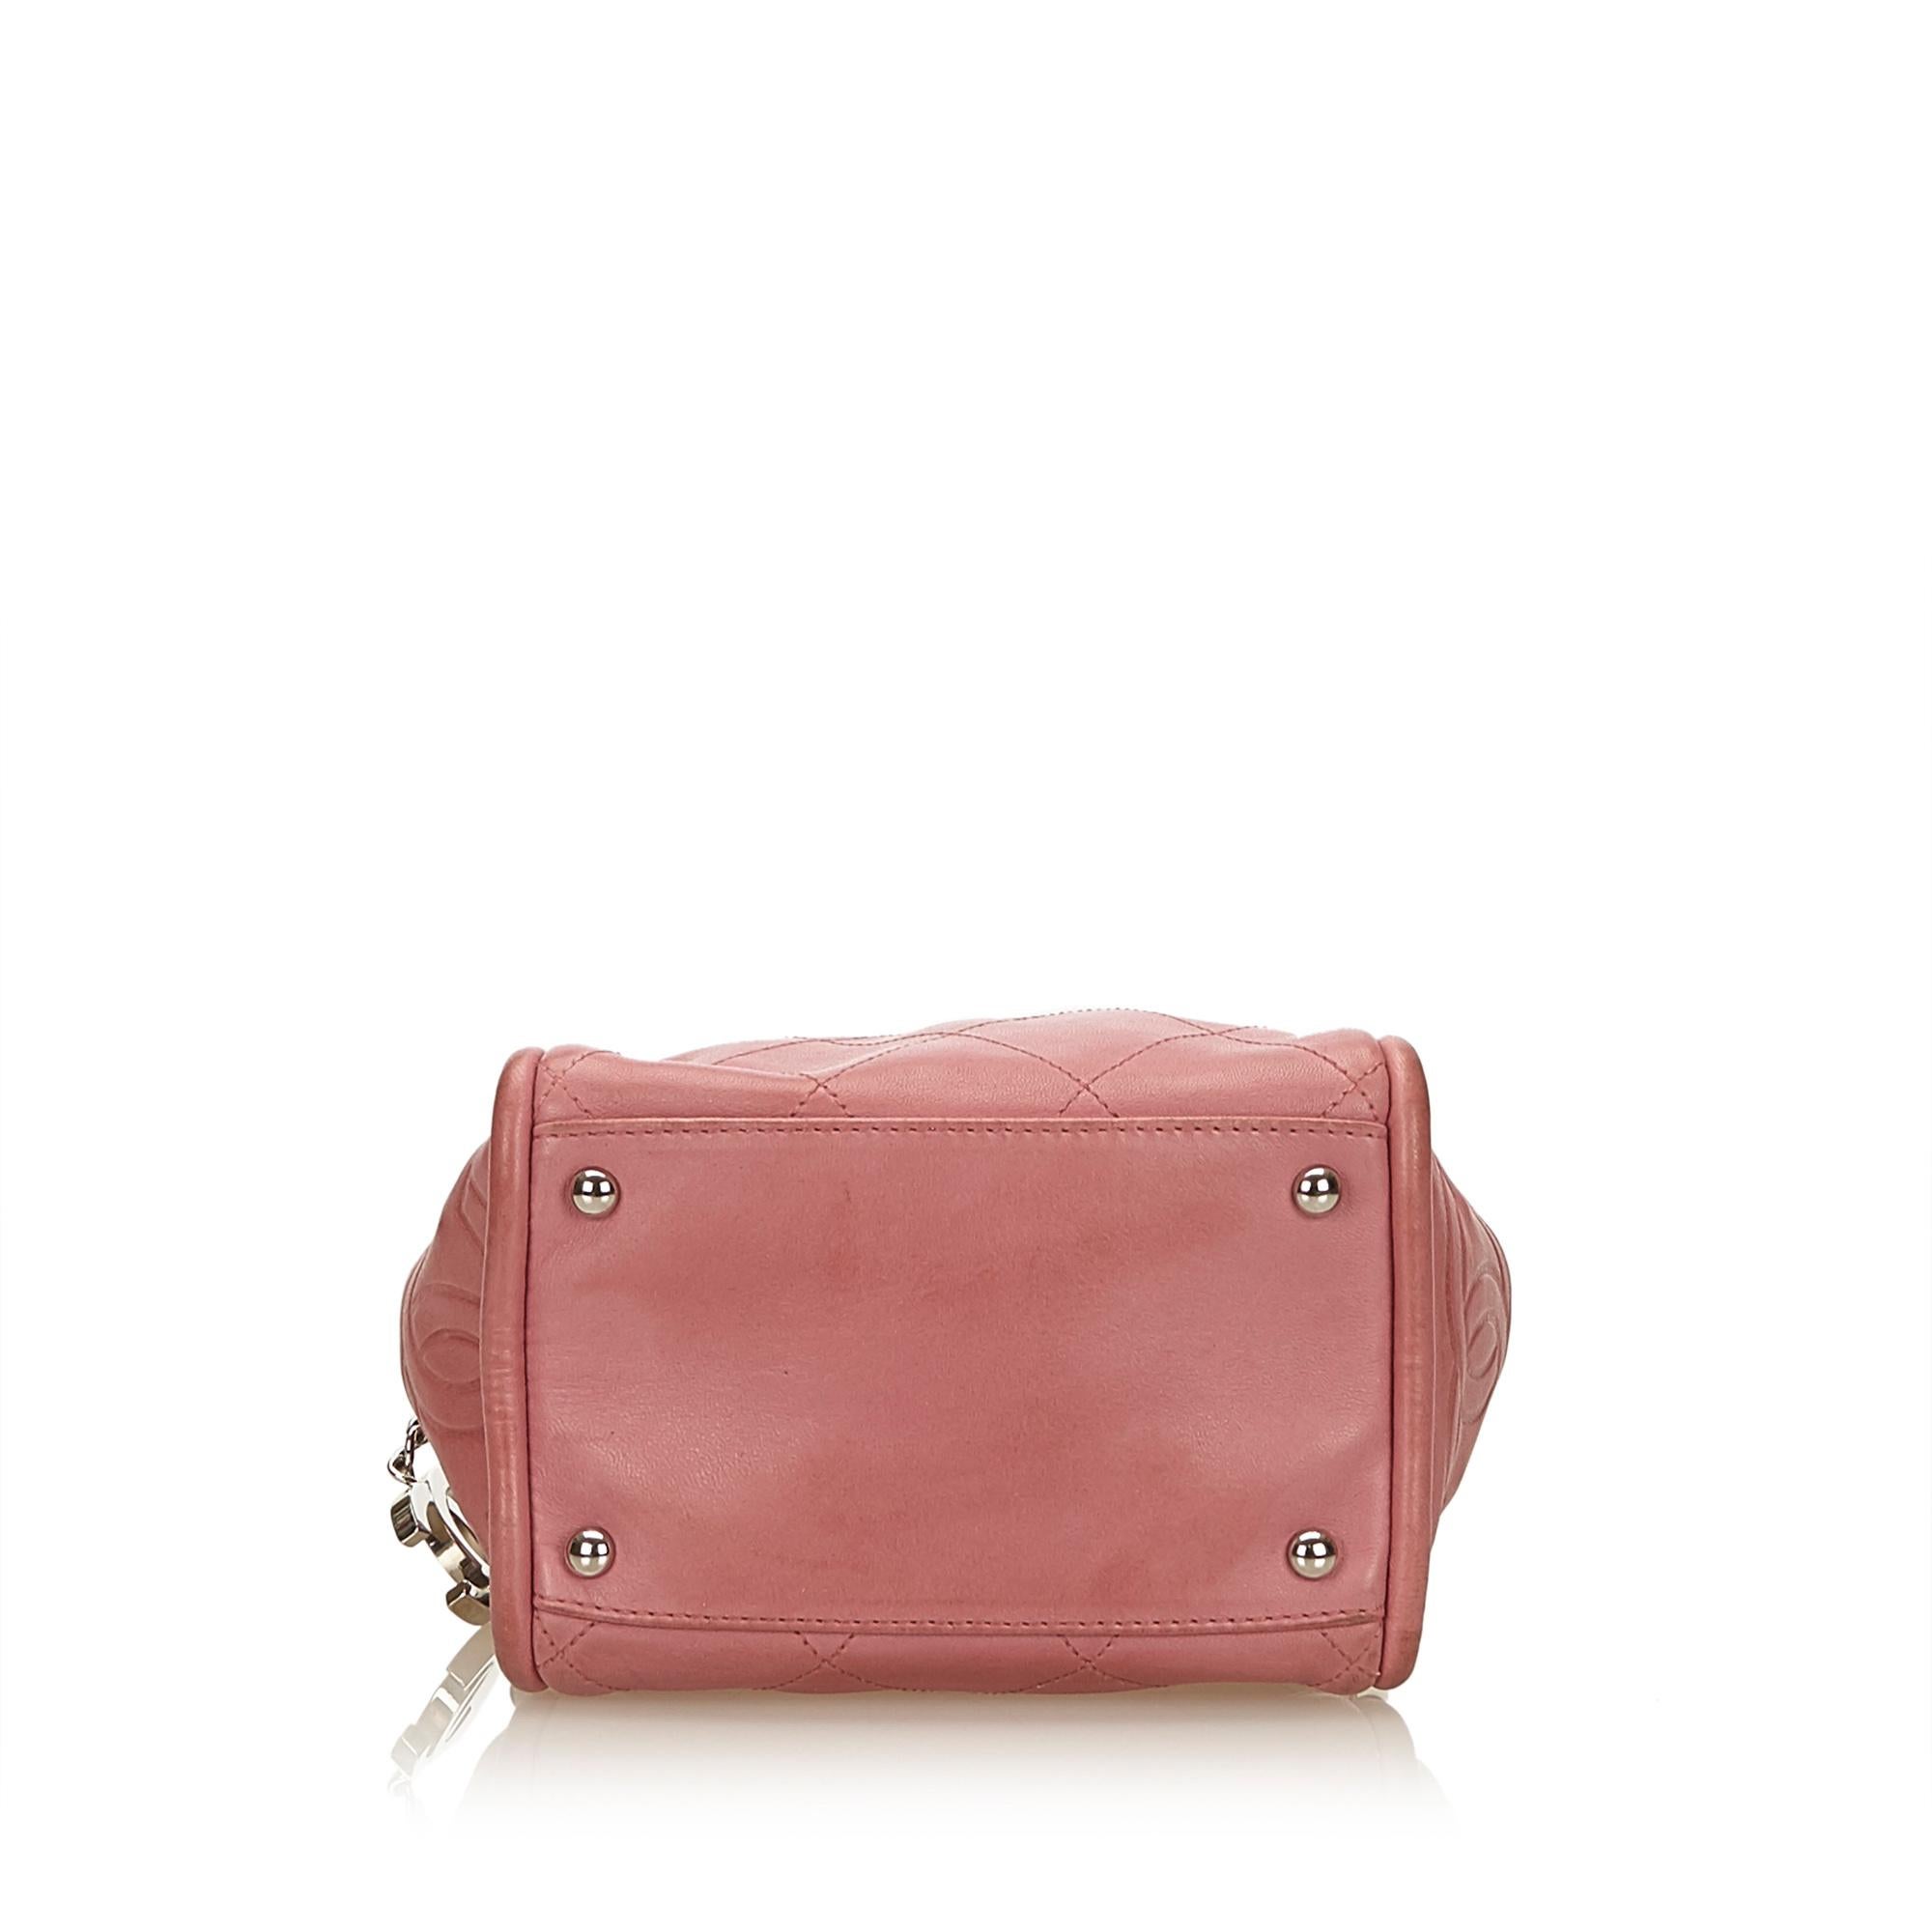 Women's or Men's Chanel Pink Wild Stitch Lambskin Handbag